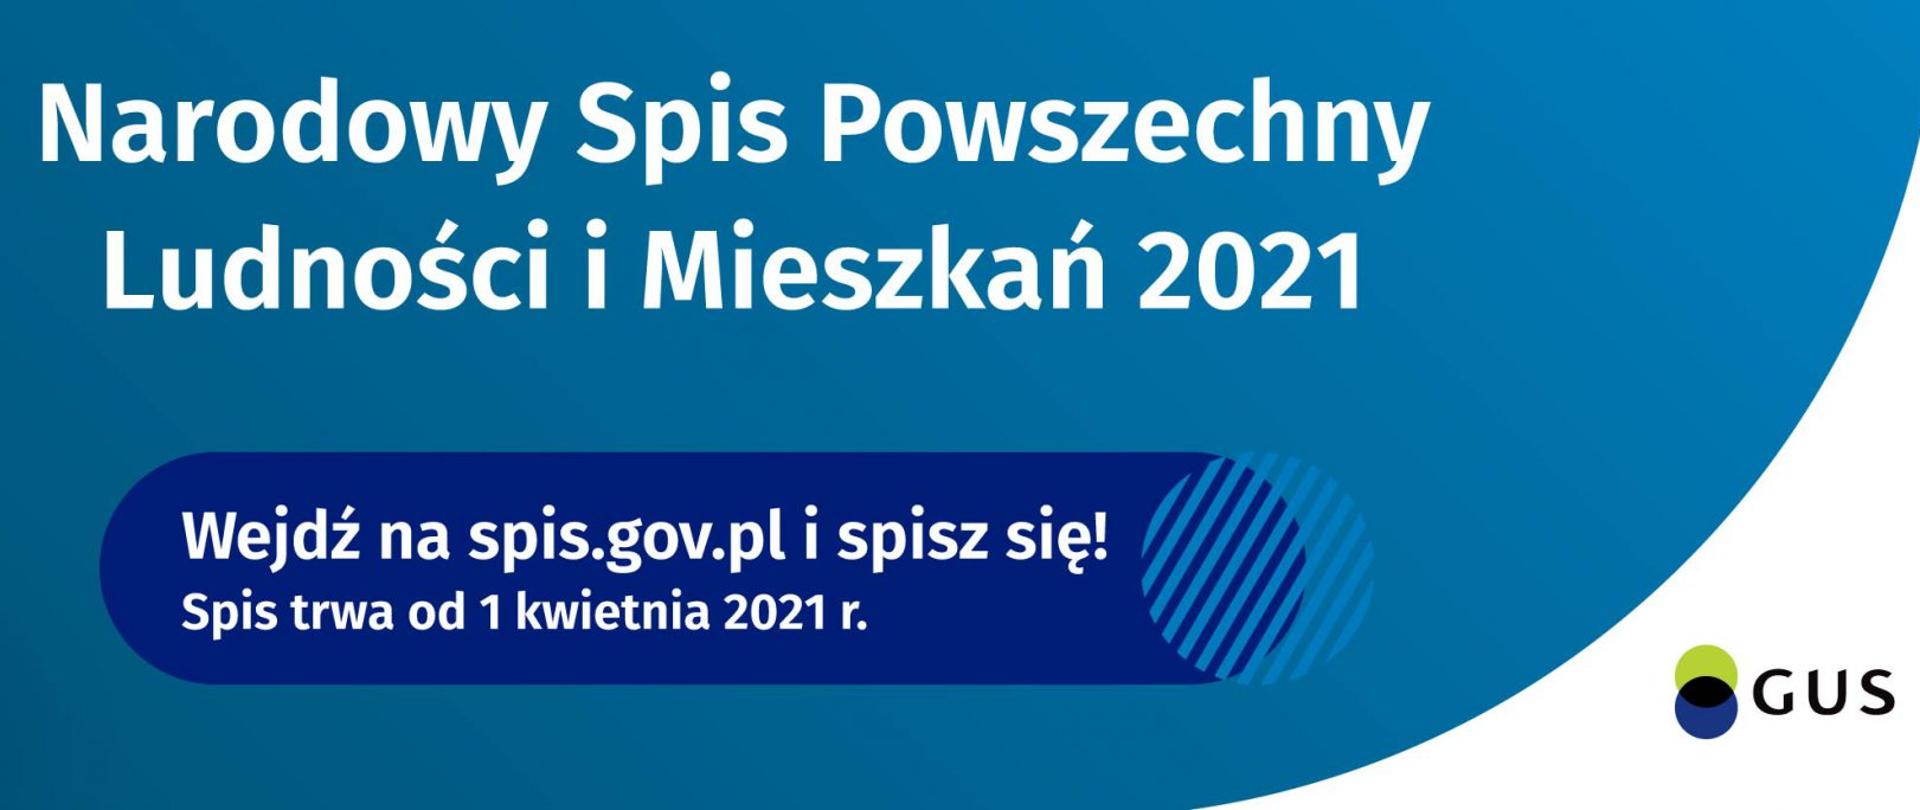 Narodowy Spis Powszechny Ludności i Mieszkań 2021.
